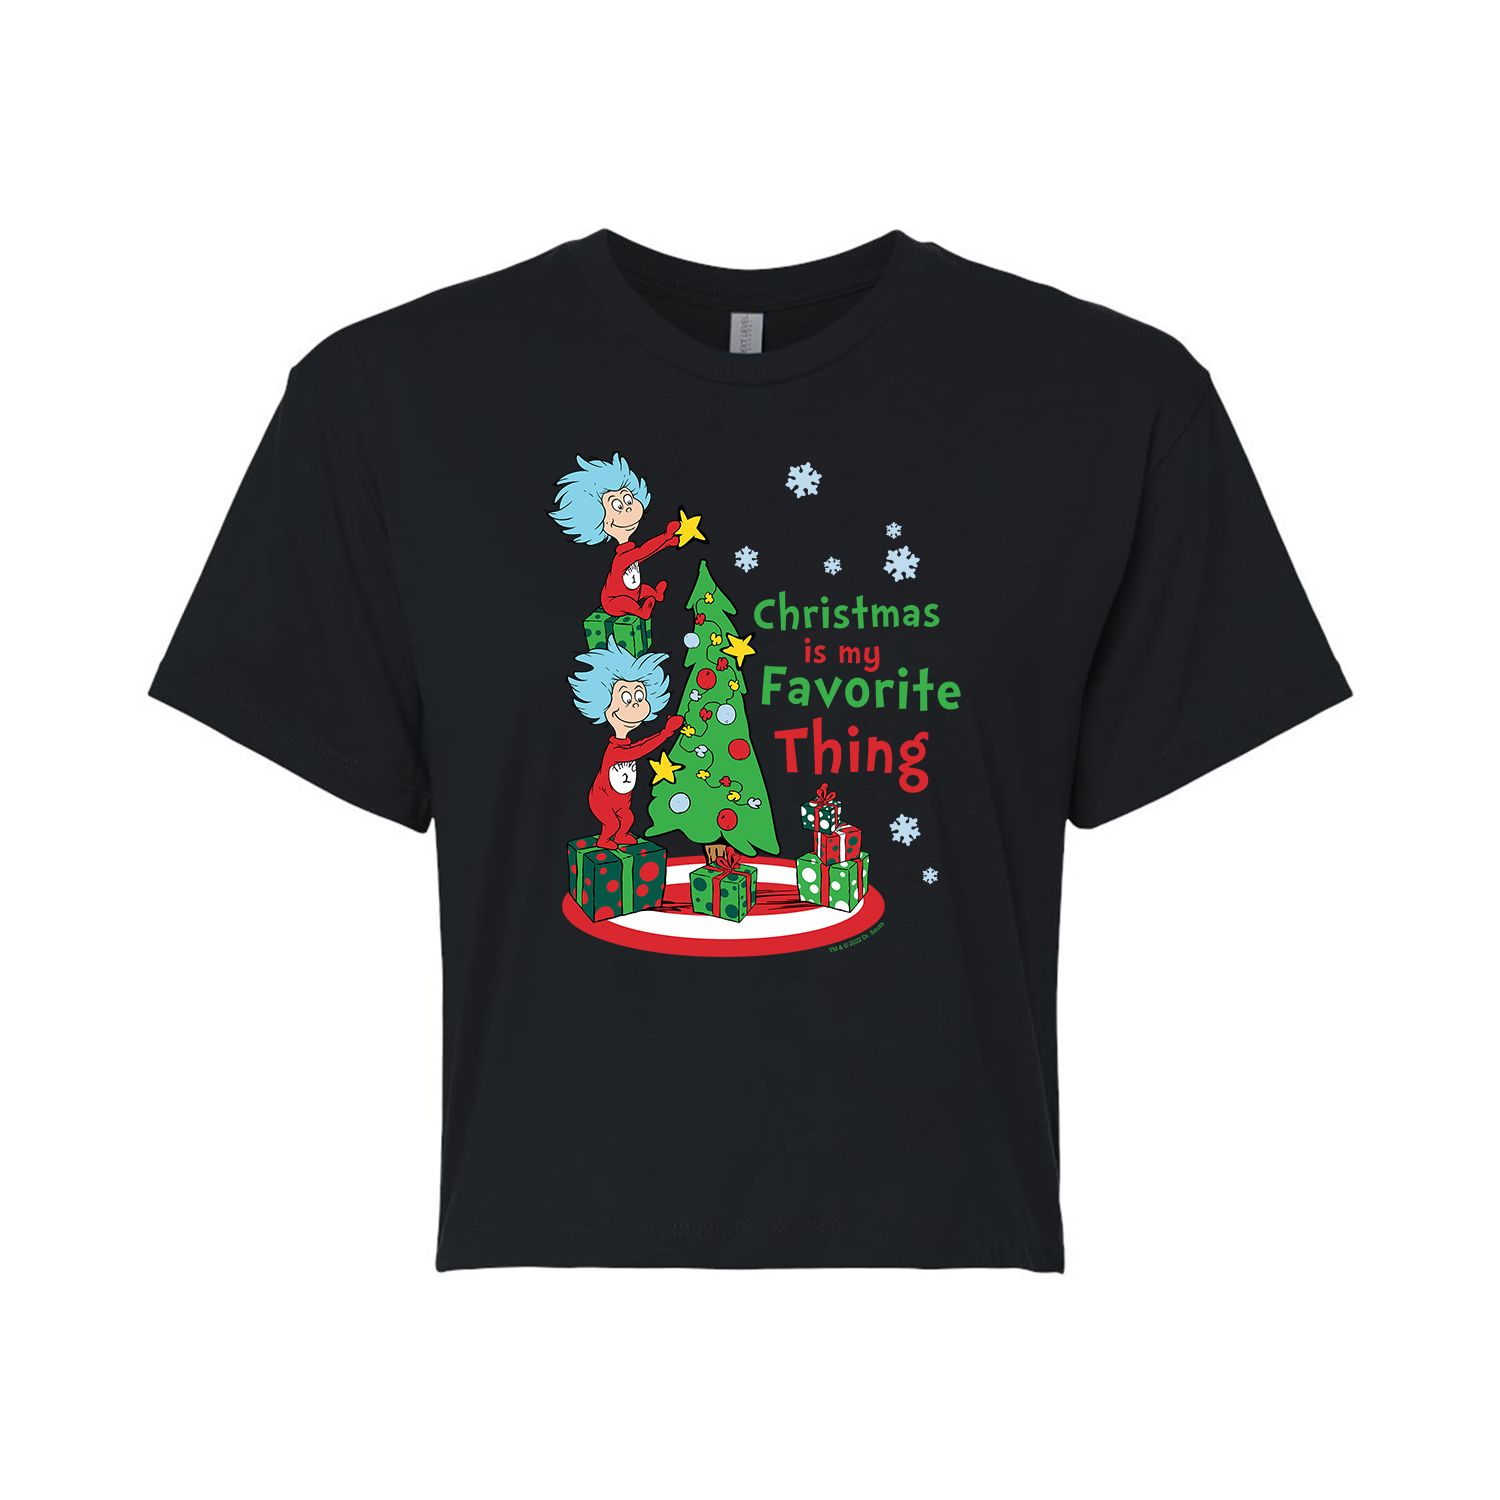 Укороченная футболка с рисунком «Доктор Сьюз» для юниоров «Рождественская любимая вещь» Licensed Character фото